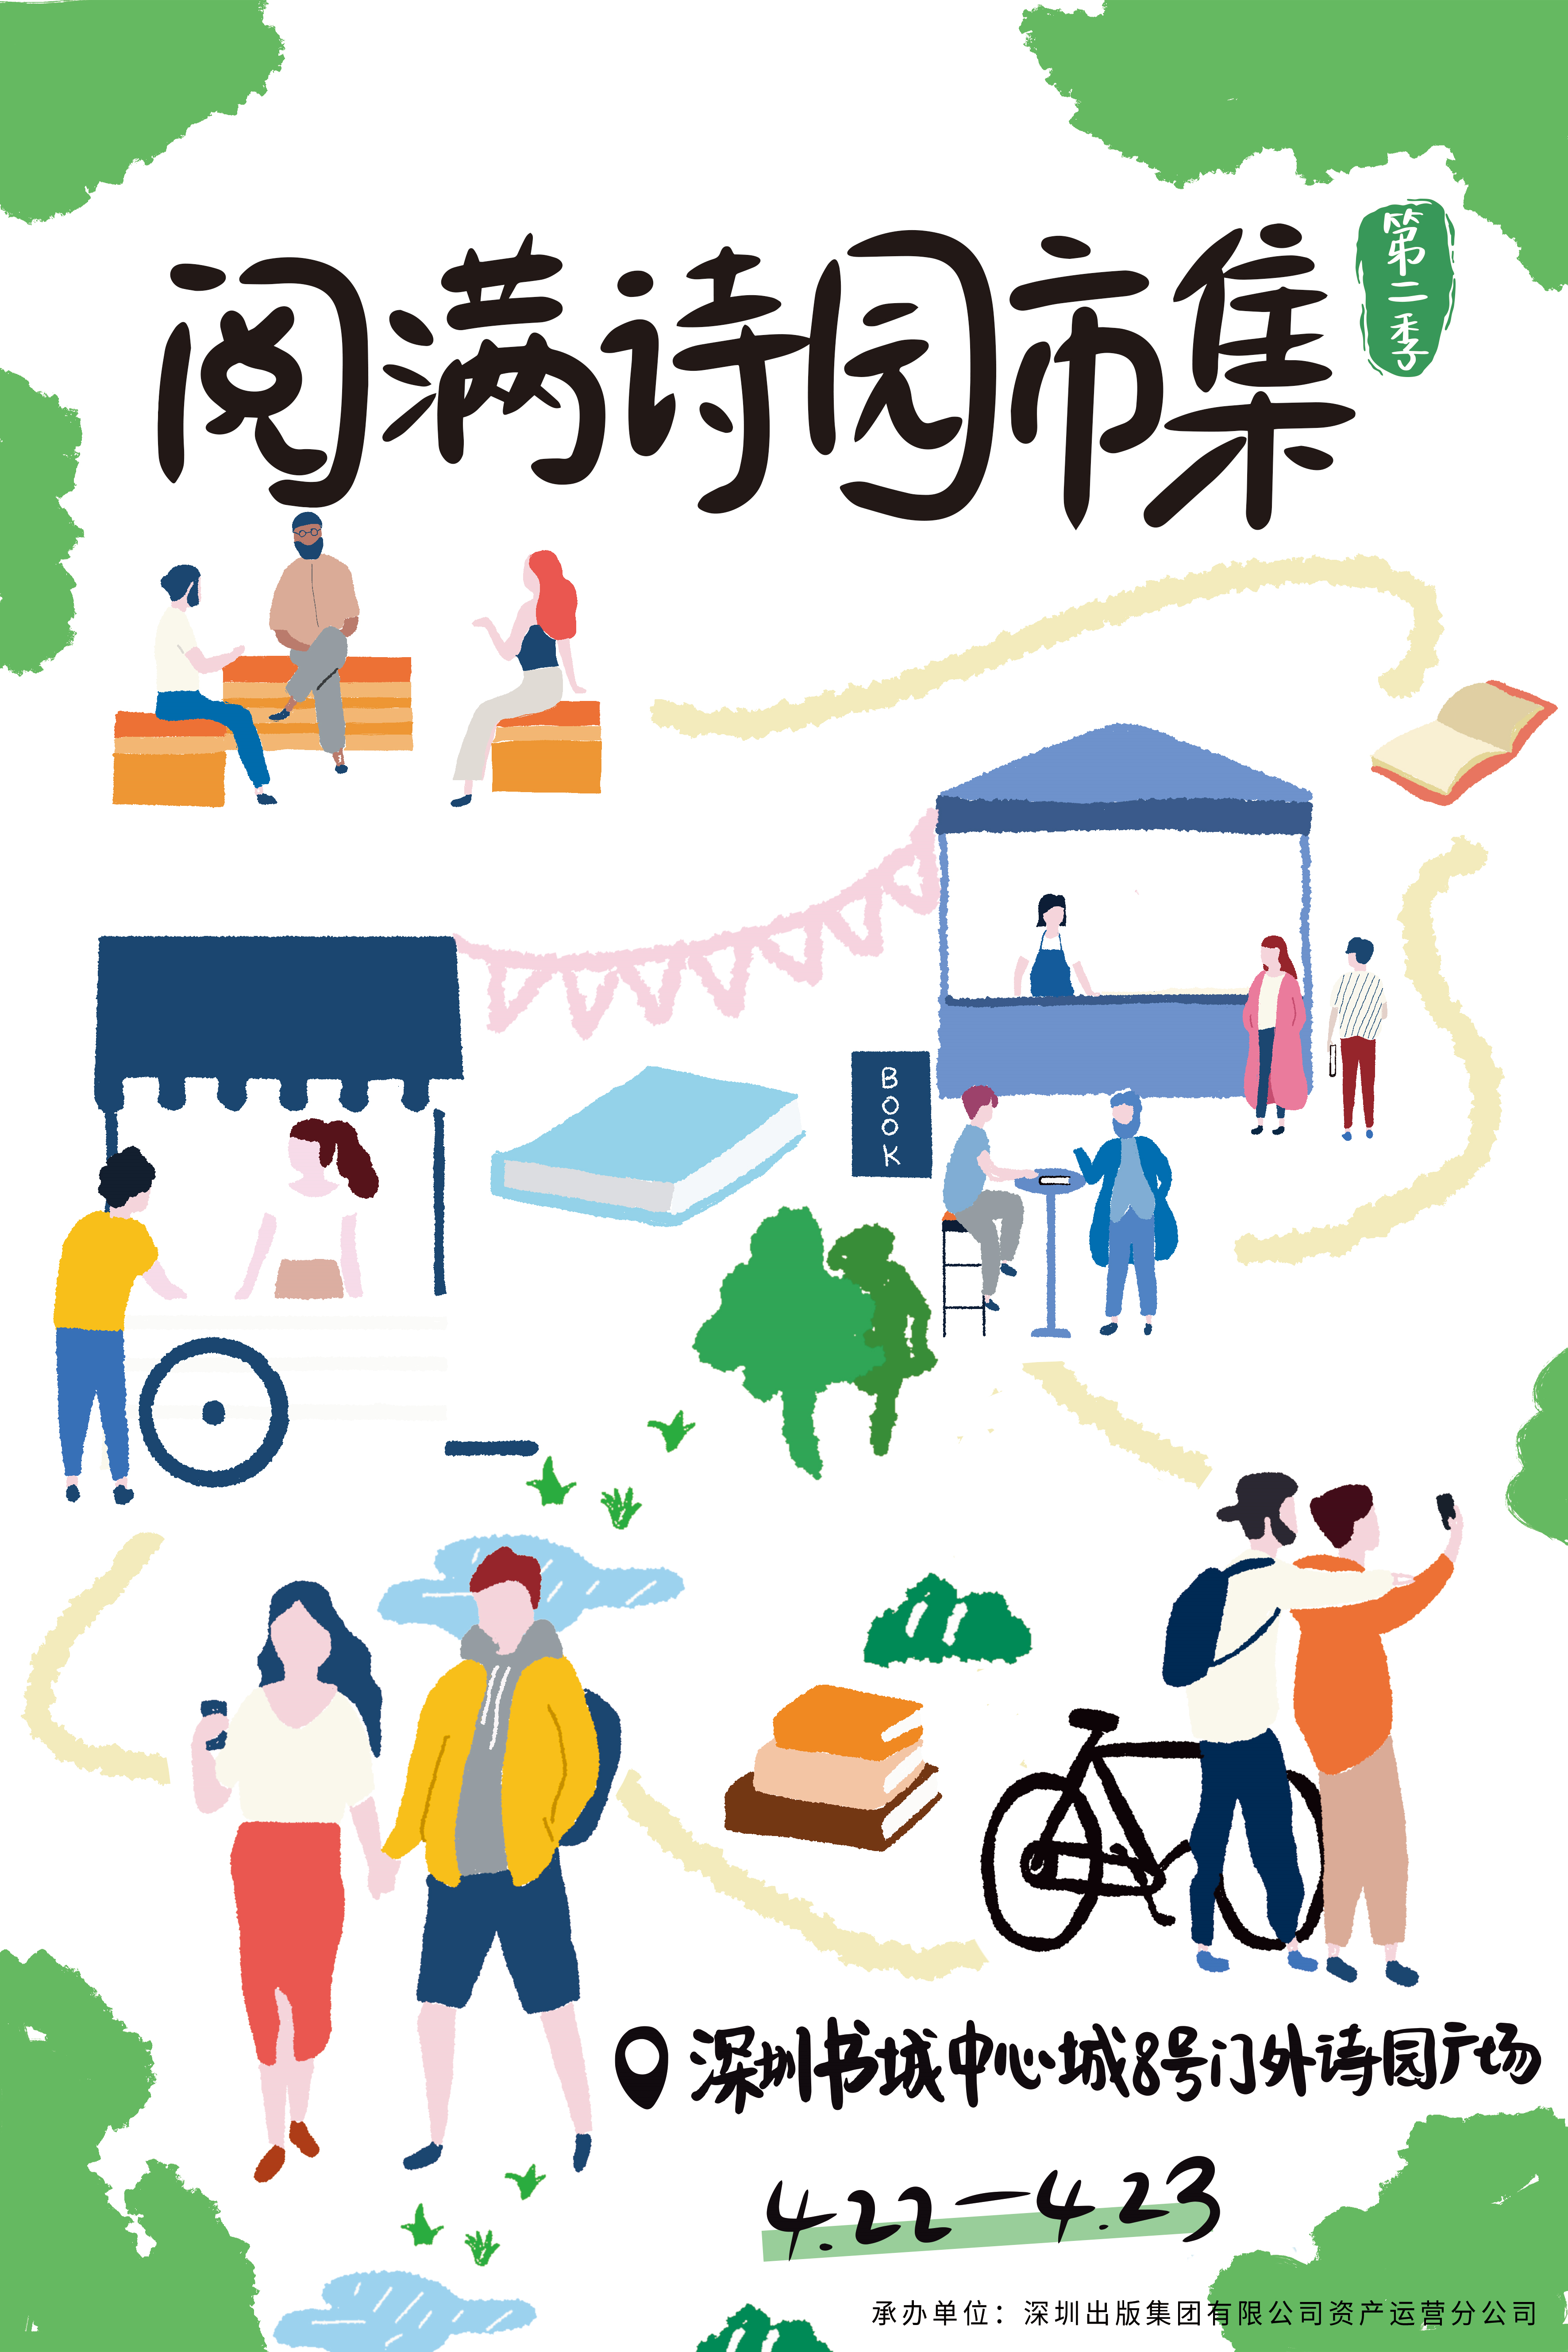 世界读书日来啦！深圳出版集团百场活动、阅读市集等你来